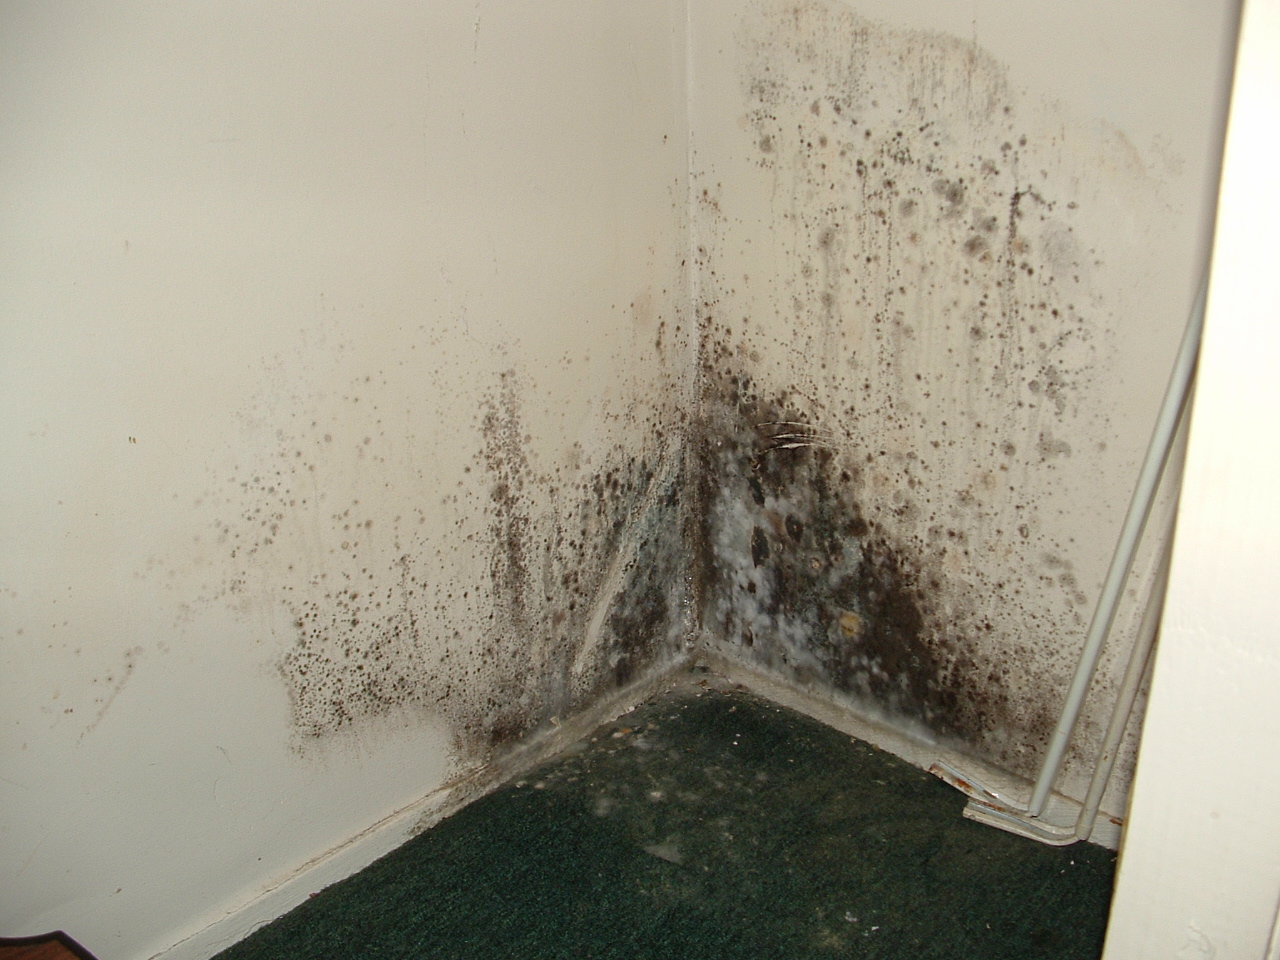 Плесень на стенах в квартире: как избавиться в домашних условиях